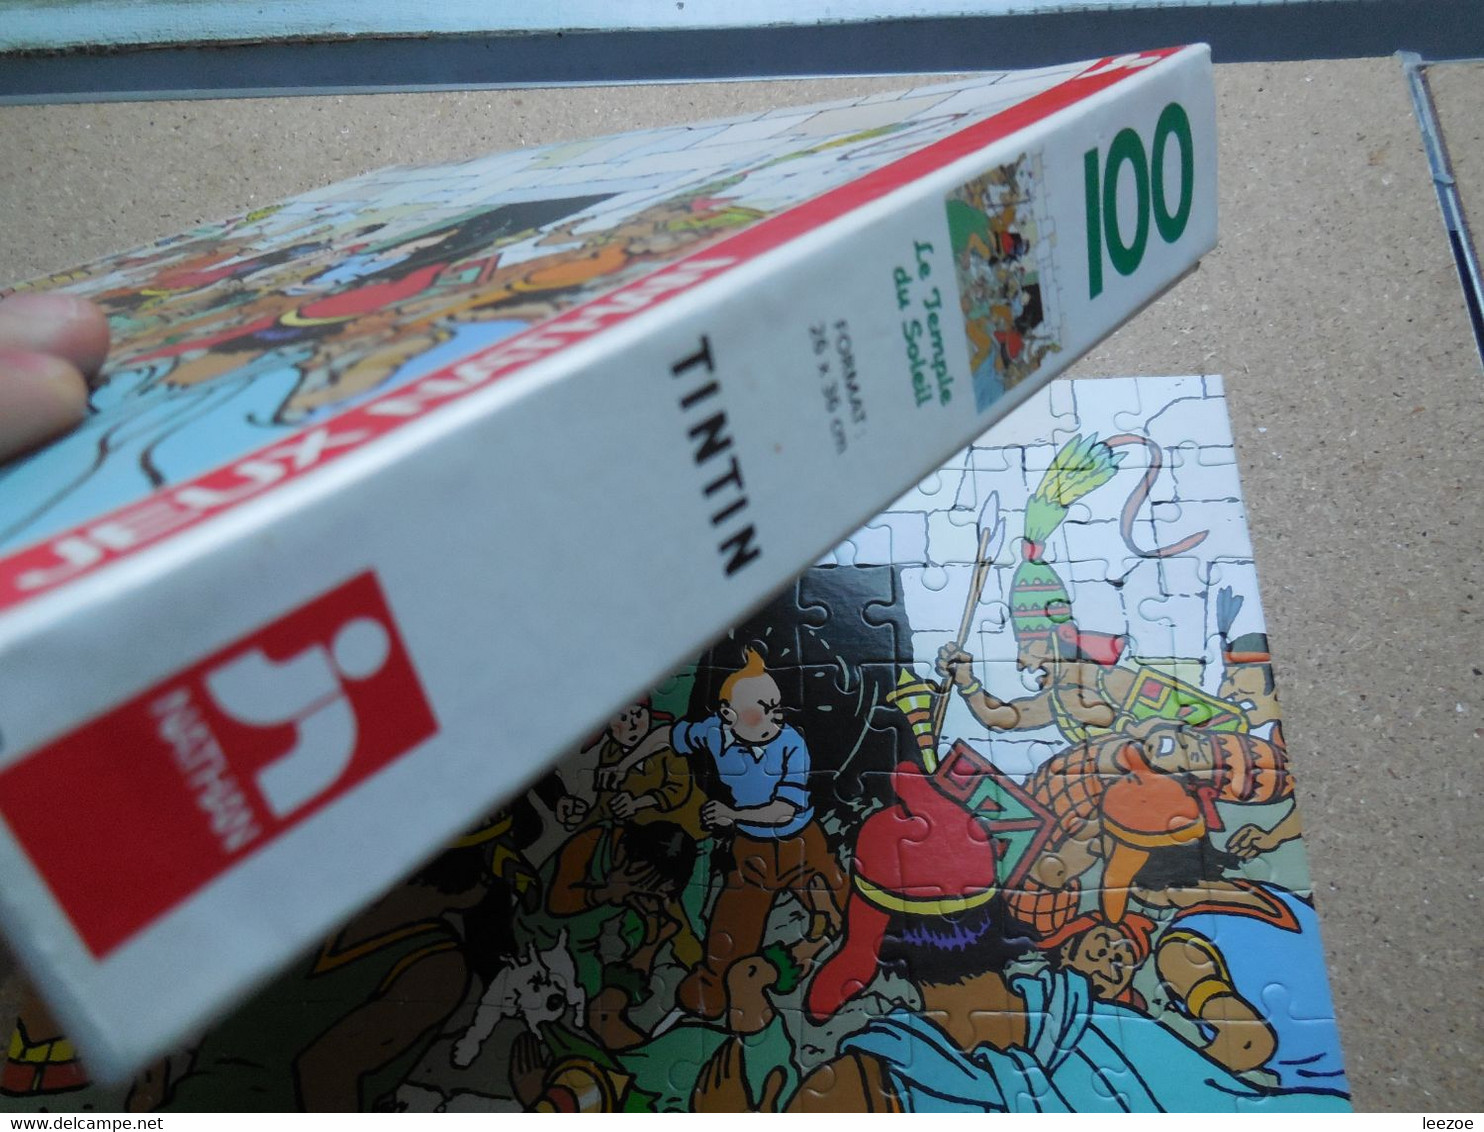 Hergé, 2 boites PUZZLES TINTIN Le Sceptre D'Ottokar avec L'oreille cassée 1983 + le temple du soleil 1992........1B222